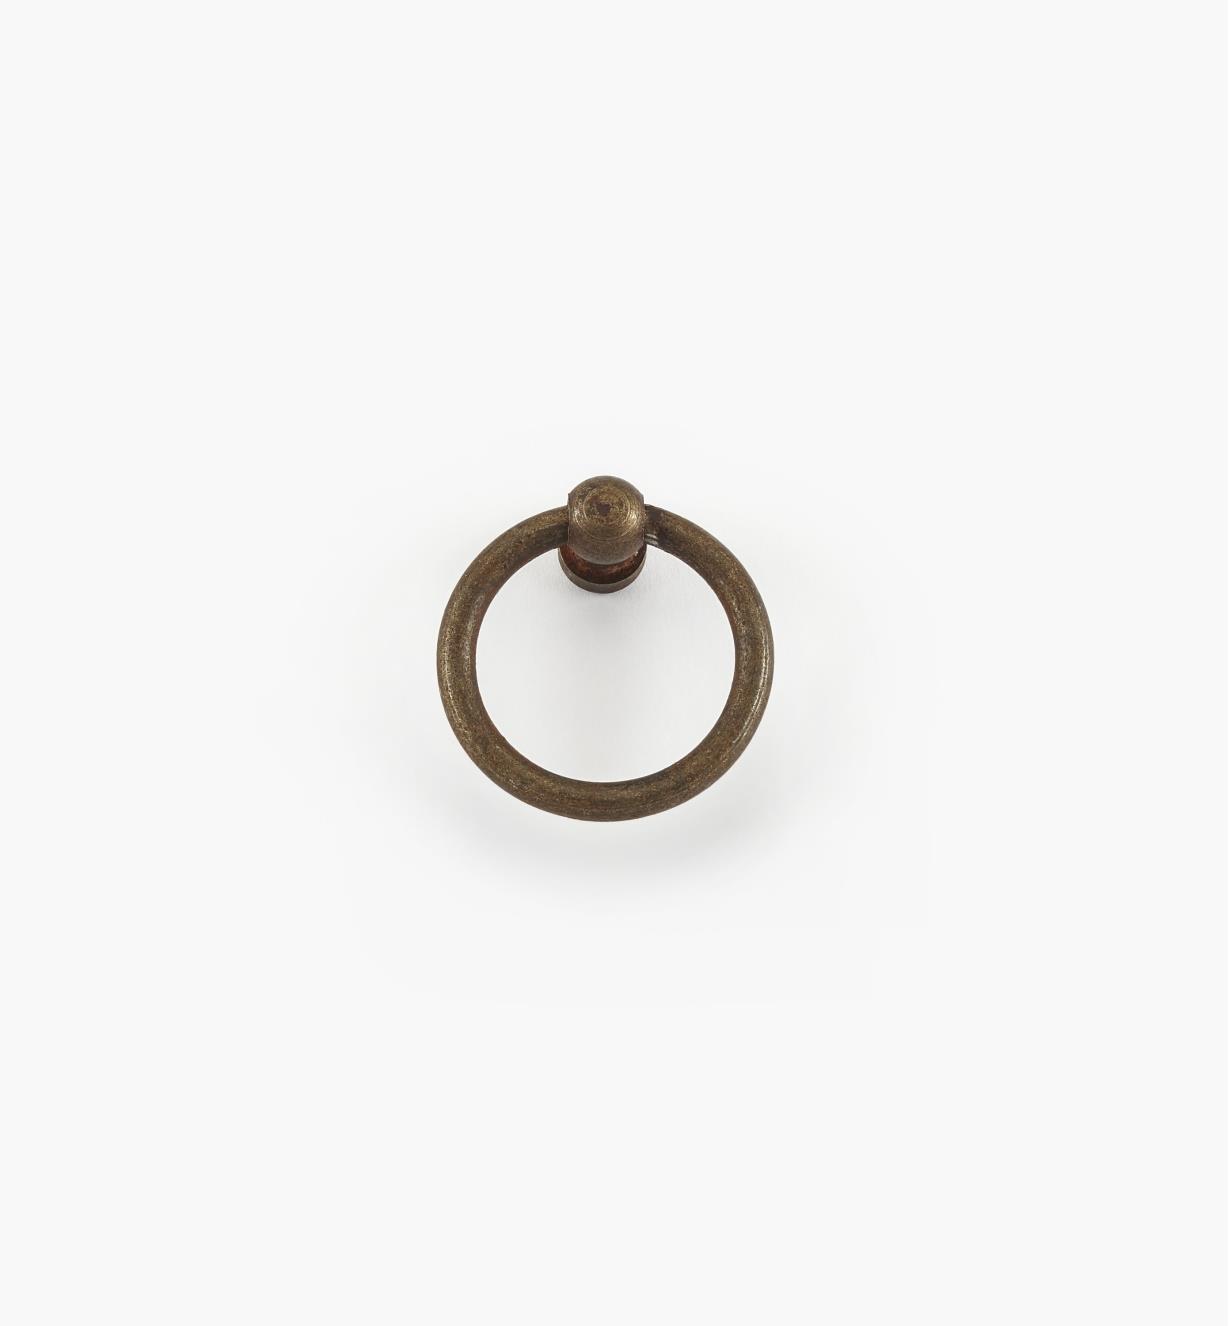 01A2923 - Poignée à anneau, quincaillerie sur platine en acier, fini rouille, 37 mm